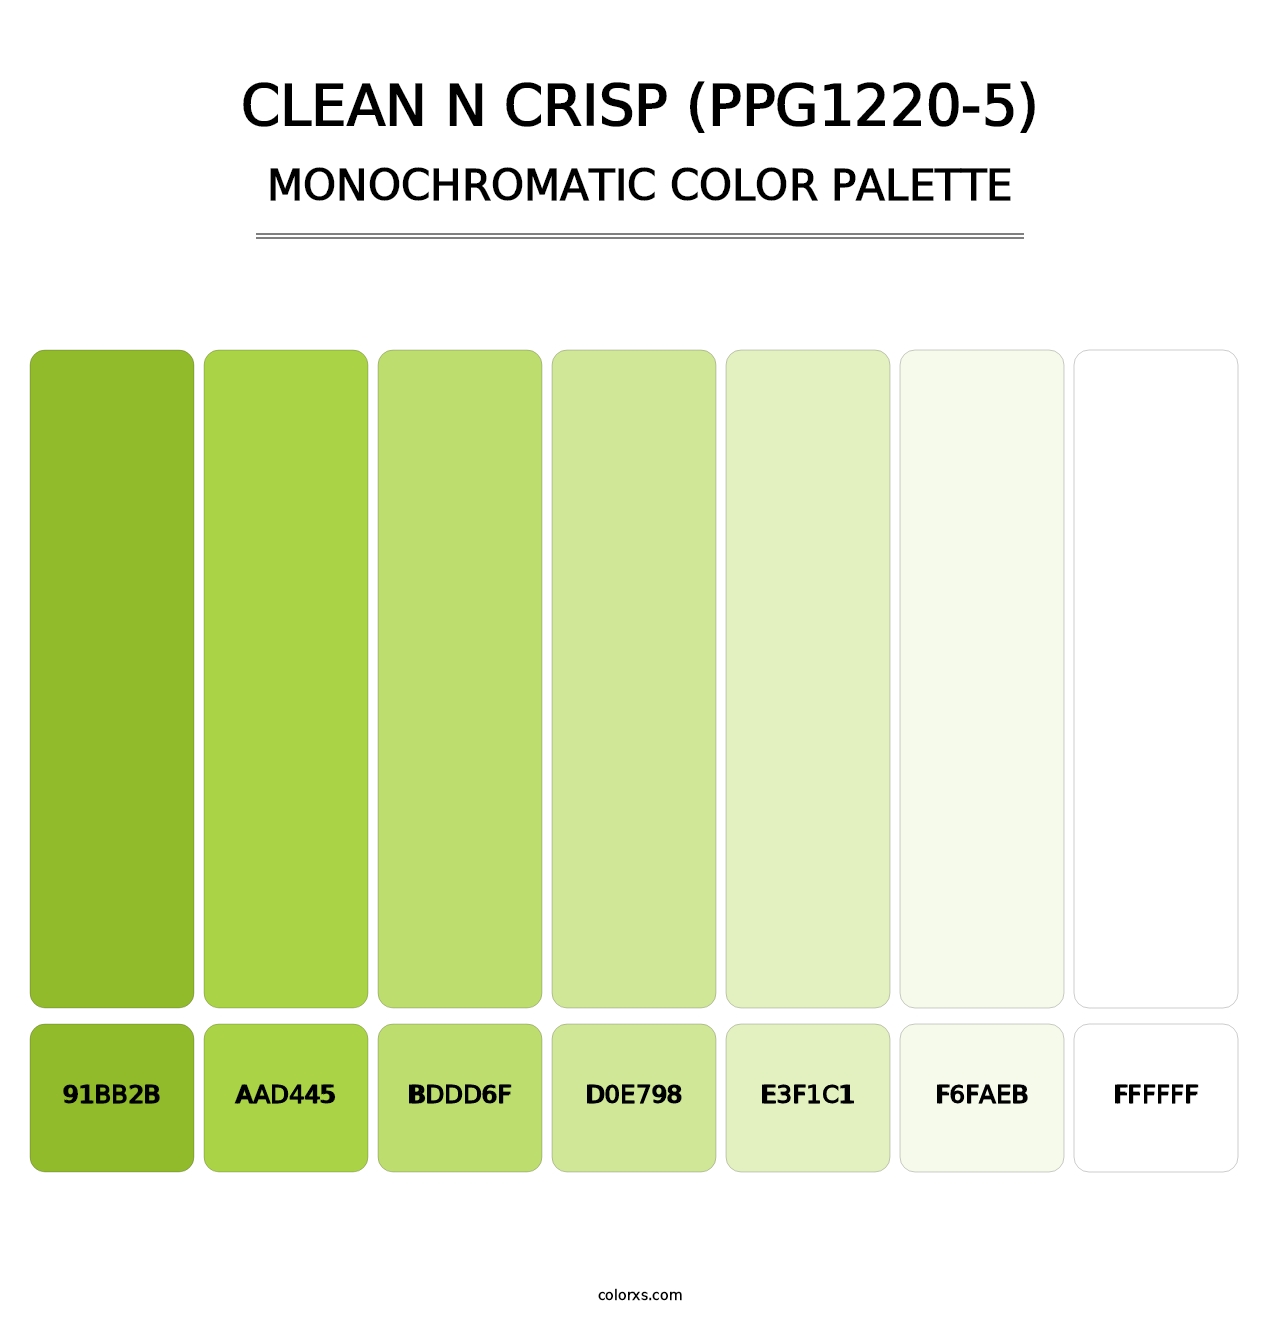 Clean N Crisp (PPG1220-5) - Monochromatic Color Palette